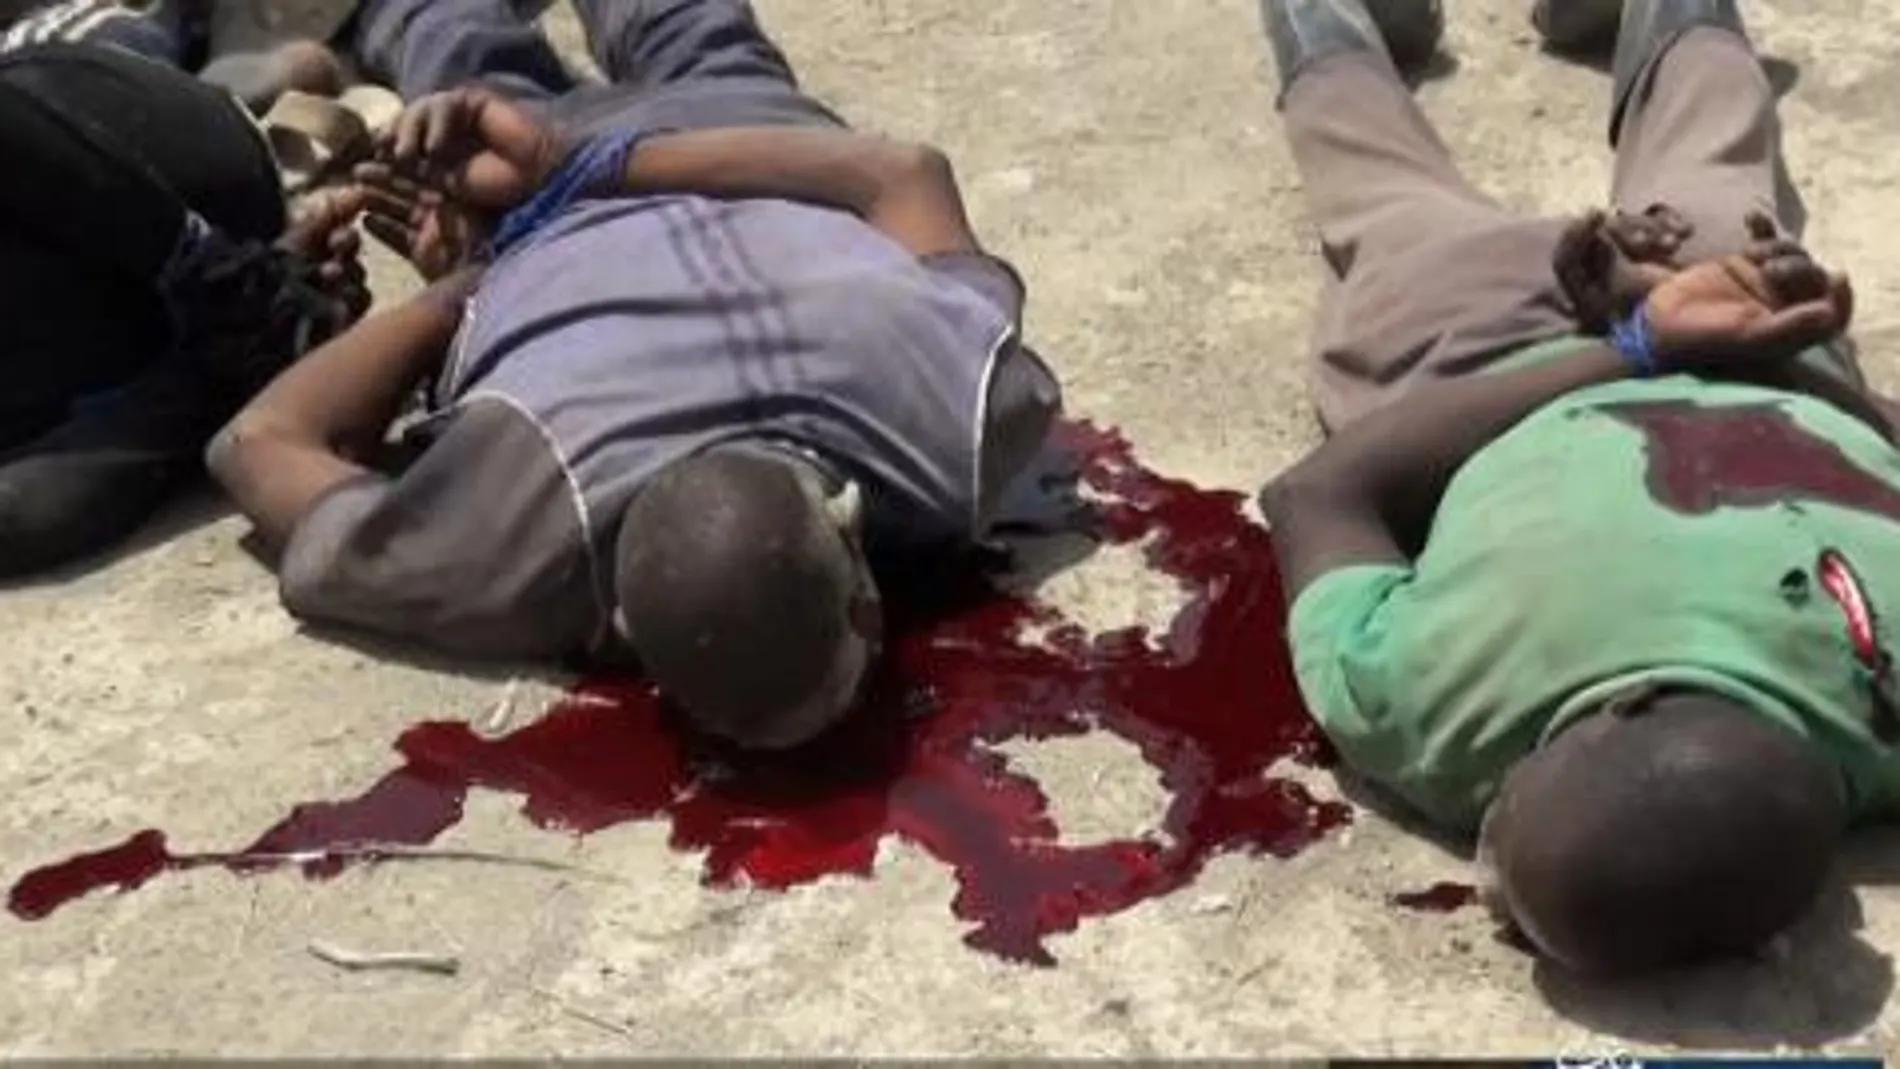 Imágen de cristianos asesinados esta misma semana en Chad (Amaq)